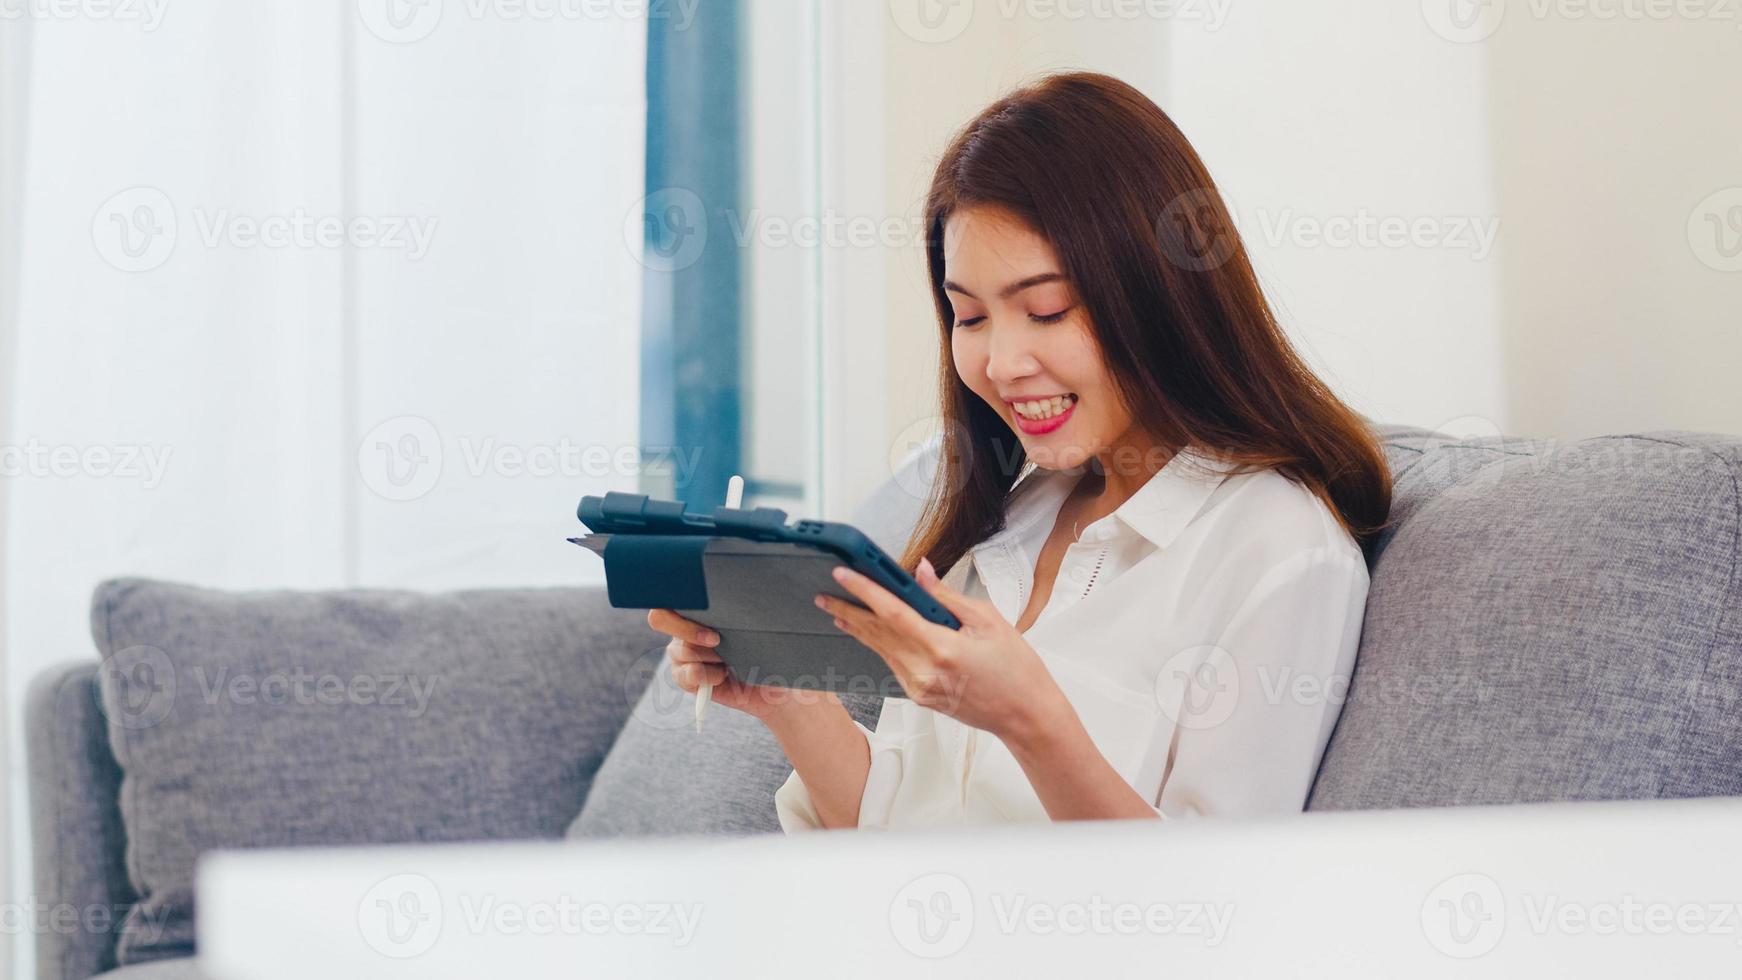 giovane donna d'affari asiatica che utilizza la videochiamata tablet parlando con la famiglia mentre lavora da casa in soggiorno. autoisolamento, distanza sociale, quarantena per coronavirus nel prossimo concetto normale. foto